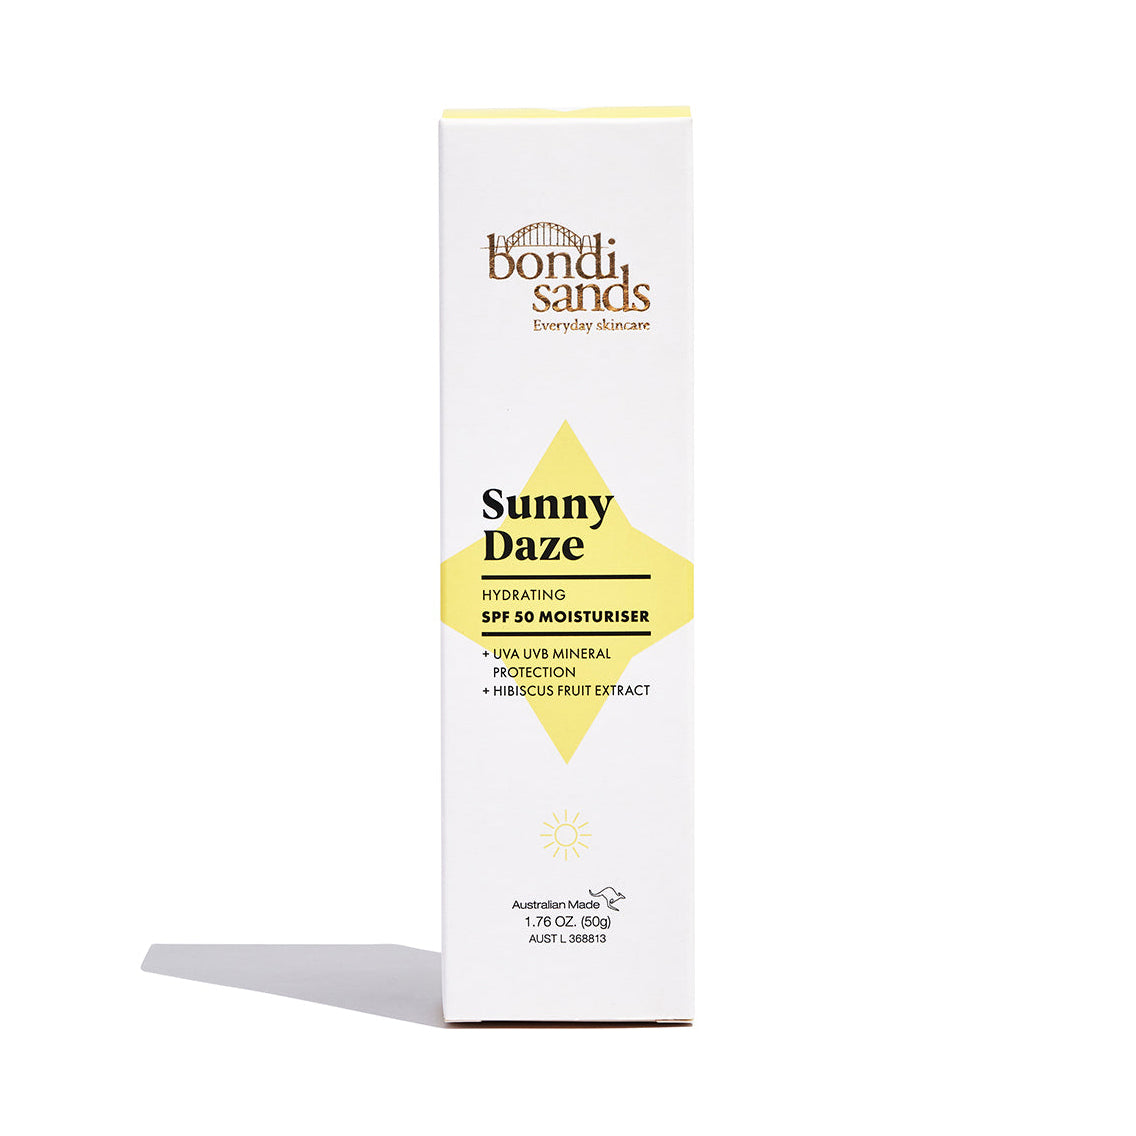 Bondi Sands Sunny Daze Spf 50 Moisturiser (50g) packaging